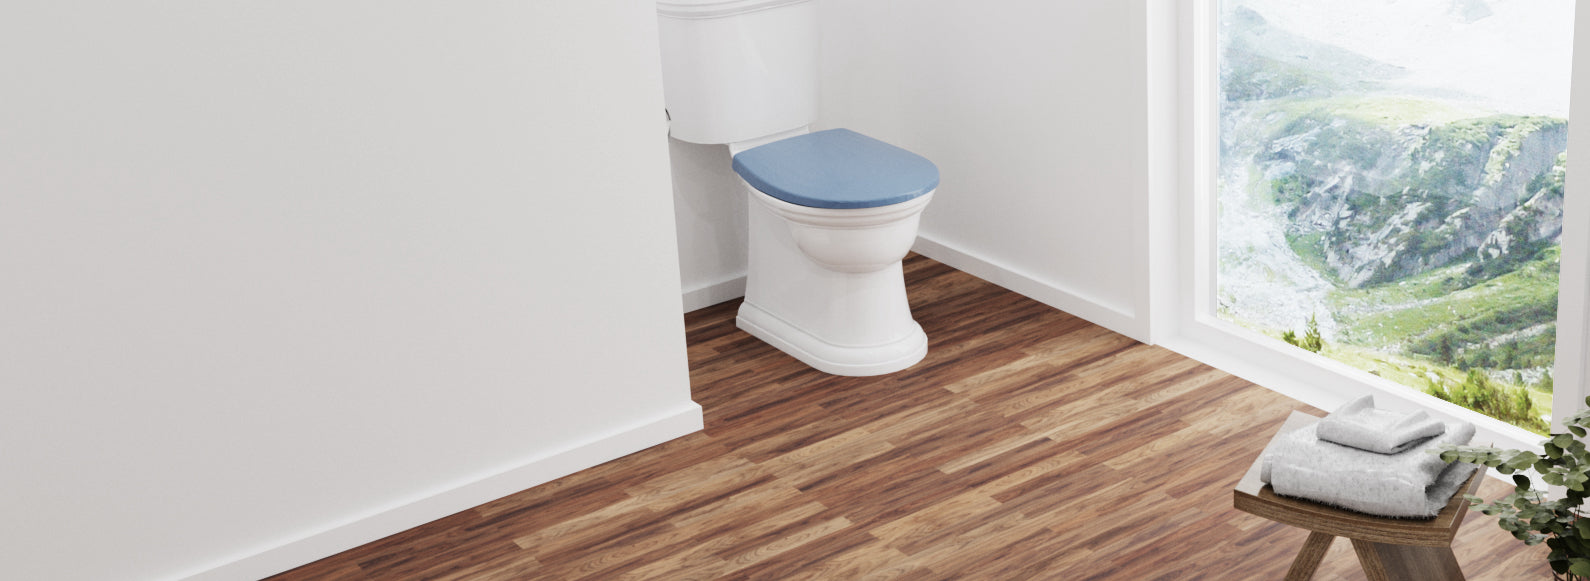 WC Sitz oval mit Absenkautomatik C100 in bermudablau